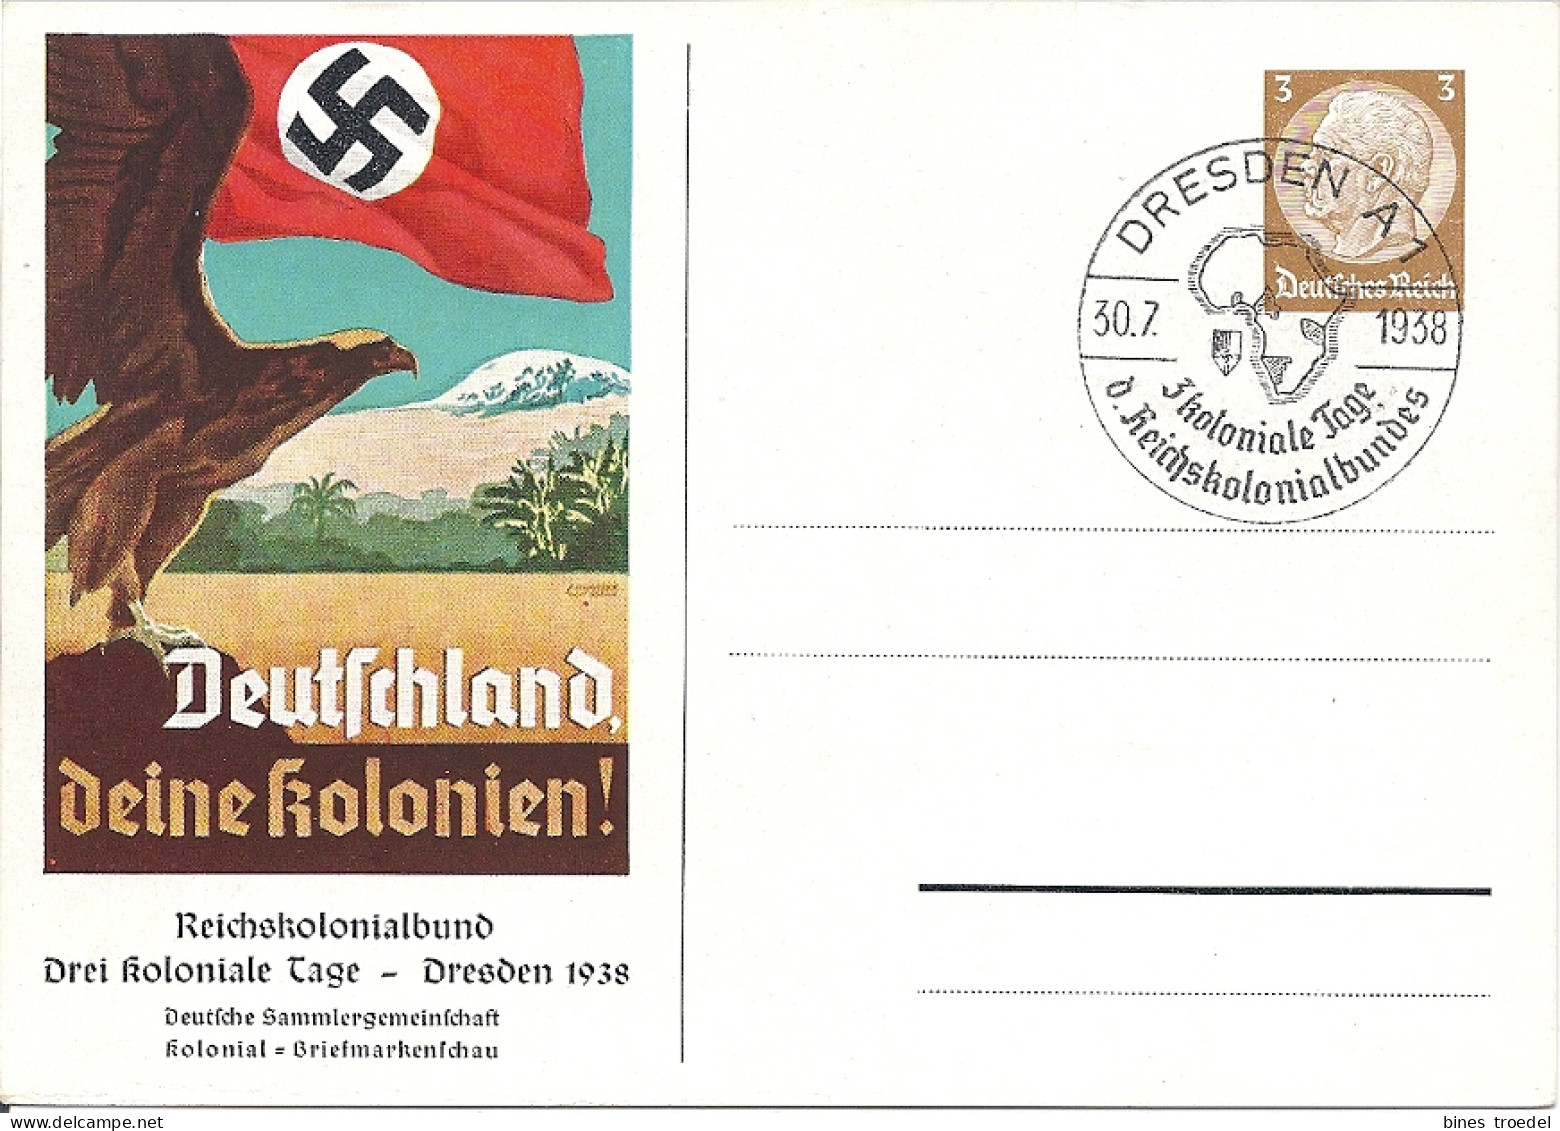 DR PP 122 C 68 - 3 Pf Hindenburg Med. Deutschland Deine Kolonien M. Bl. Sonderstempel - Private Postal Stationery